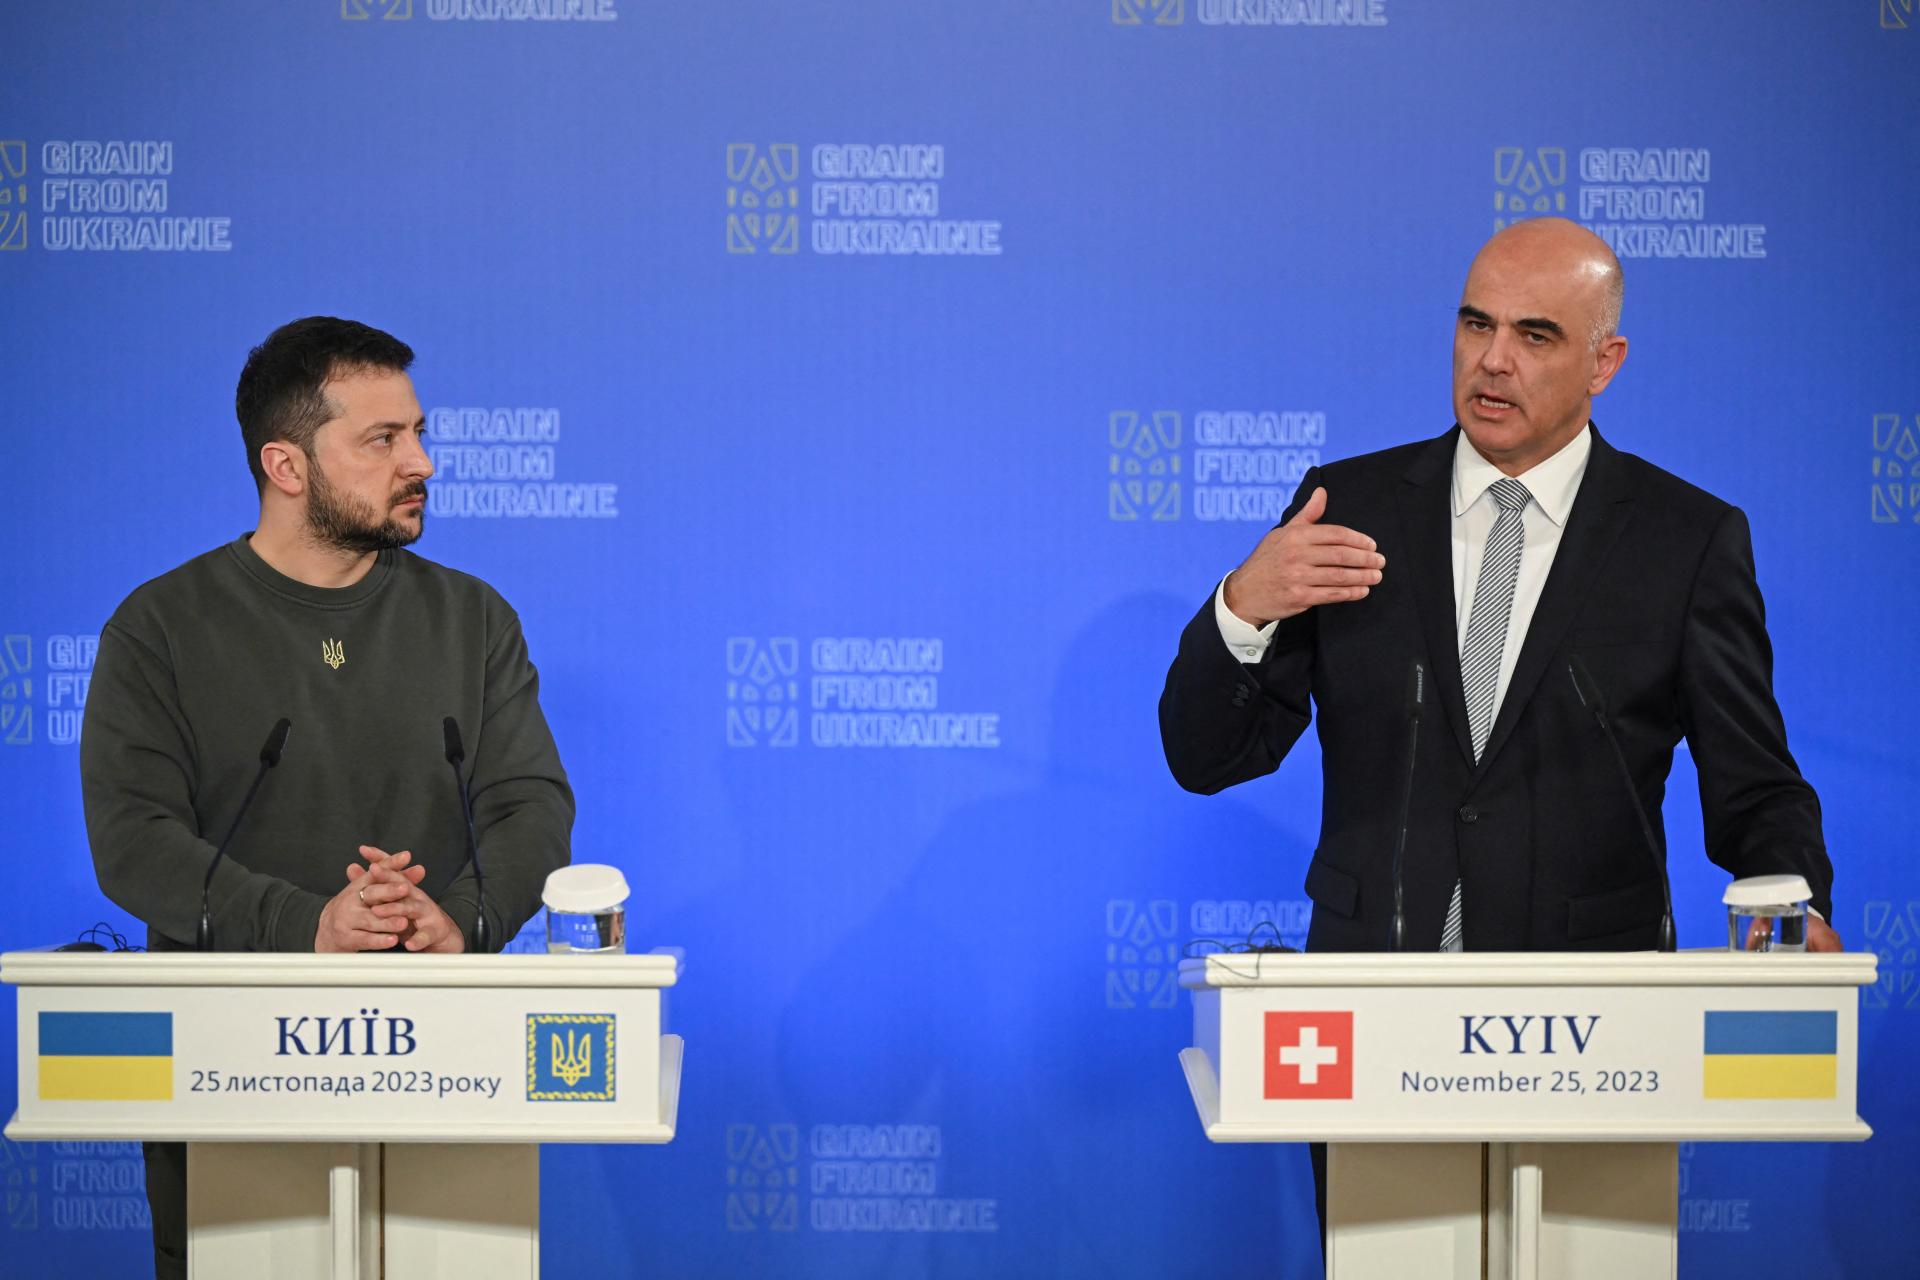 Švajčiarsky prezident na návšteve Kyjeva sľúbil ďalšiu pomoc Ukrajine, drží sa však neutrality